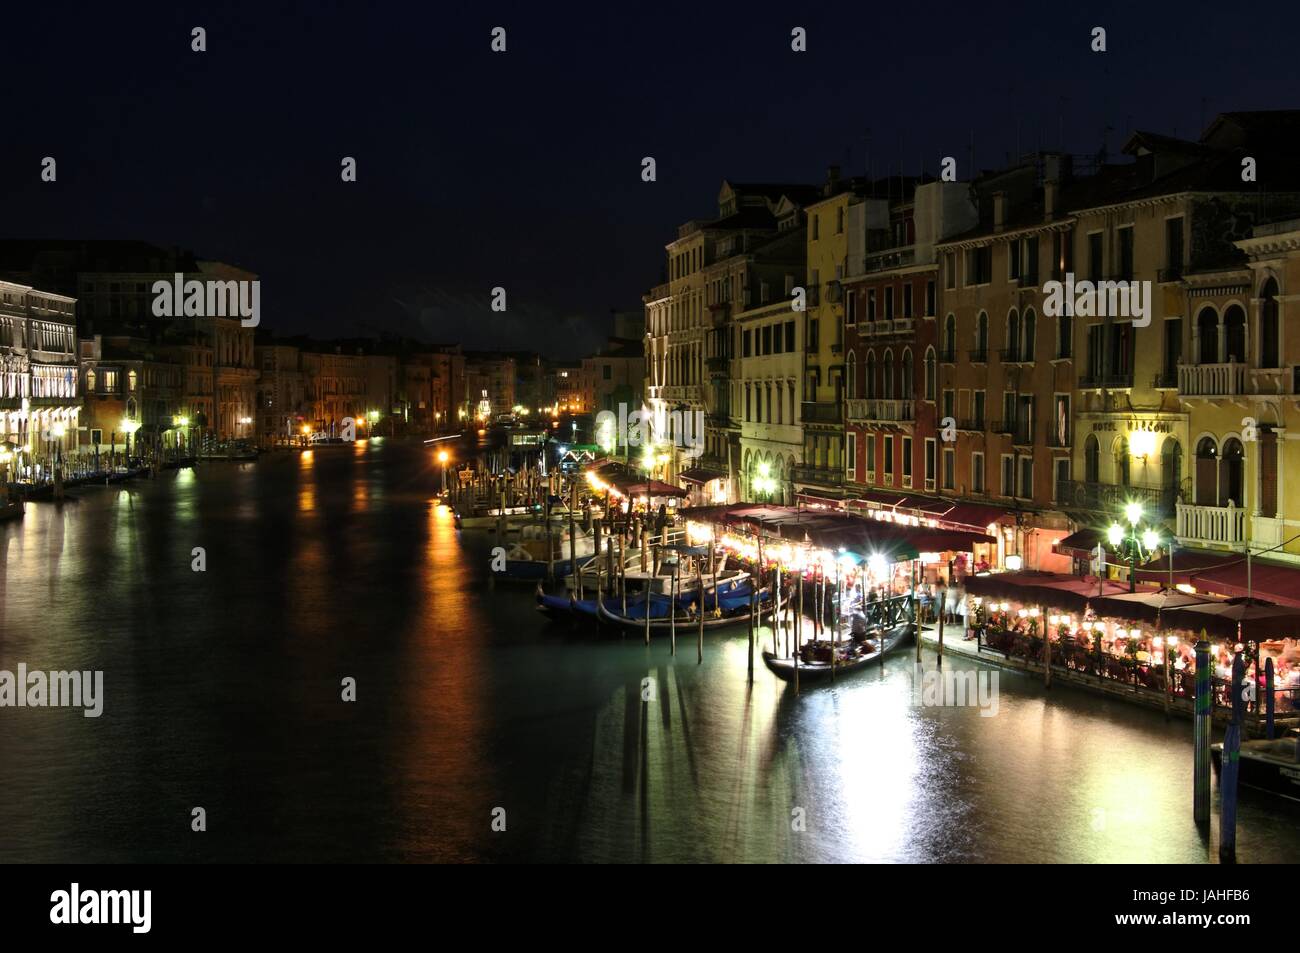 Kanal de Grande bei Nacht mit Booten Stock Photo